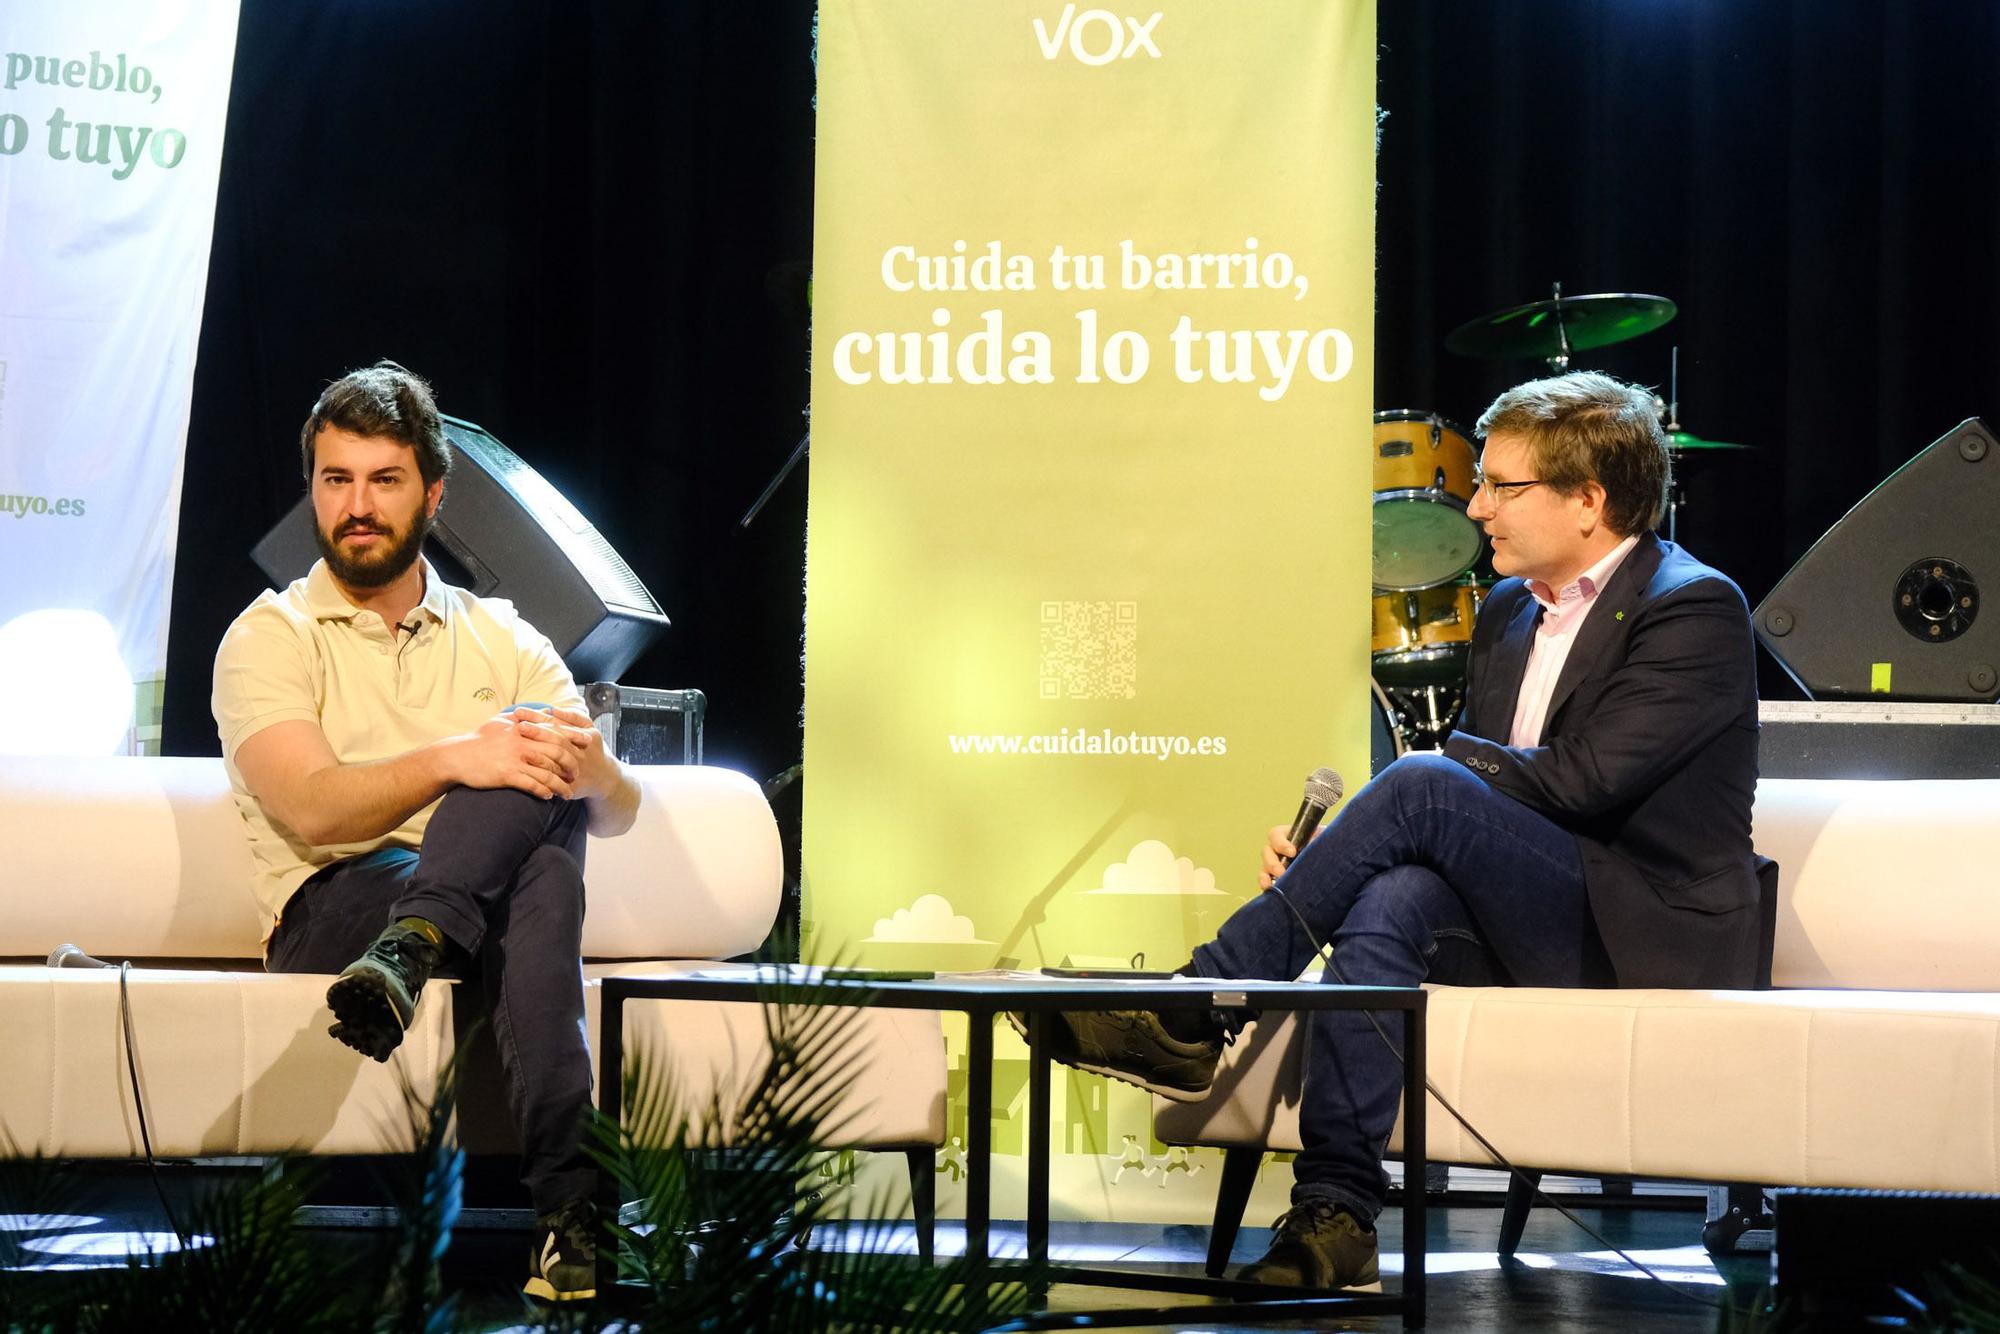 Acto VOX con vicepresidente de Castilla-Leon